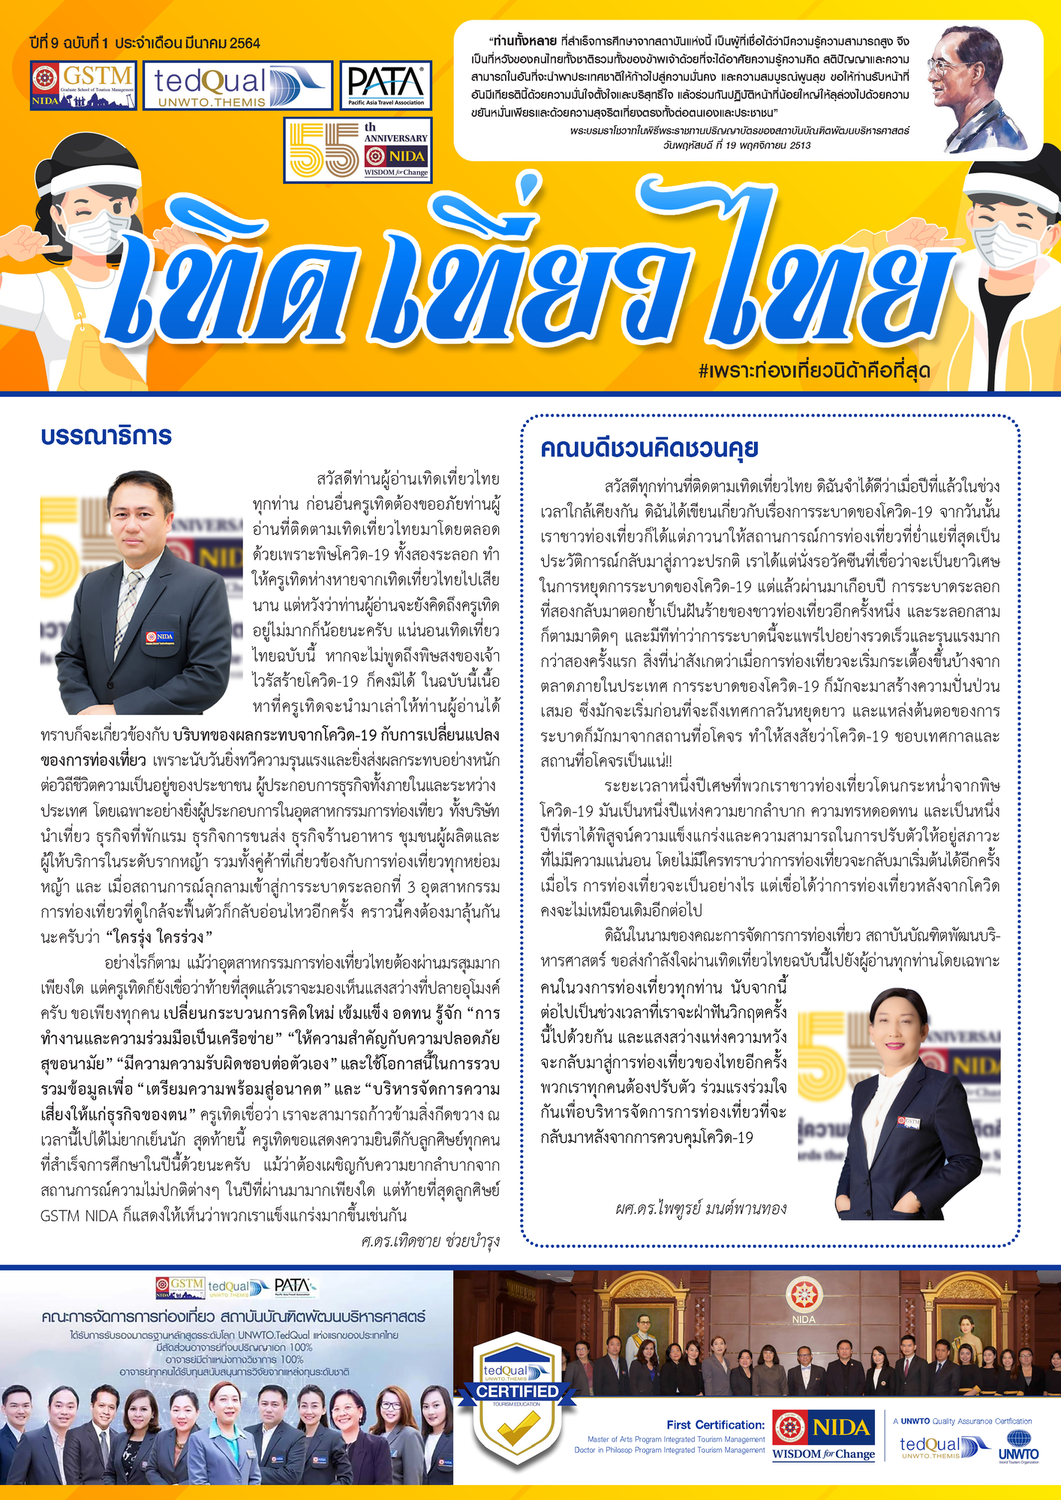 เทิดเที่ยวไทย_ปีที่ 9 ฉบับที่ 1 มีนาคม 2564_Page_1 (1)